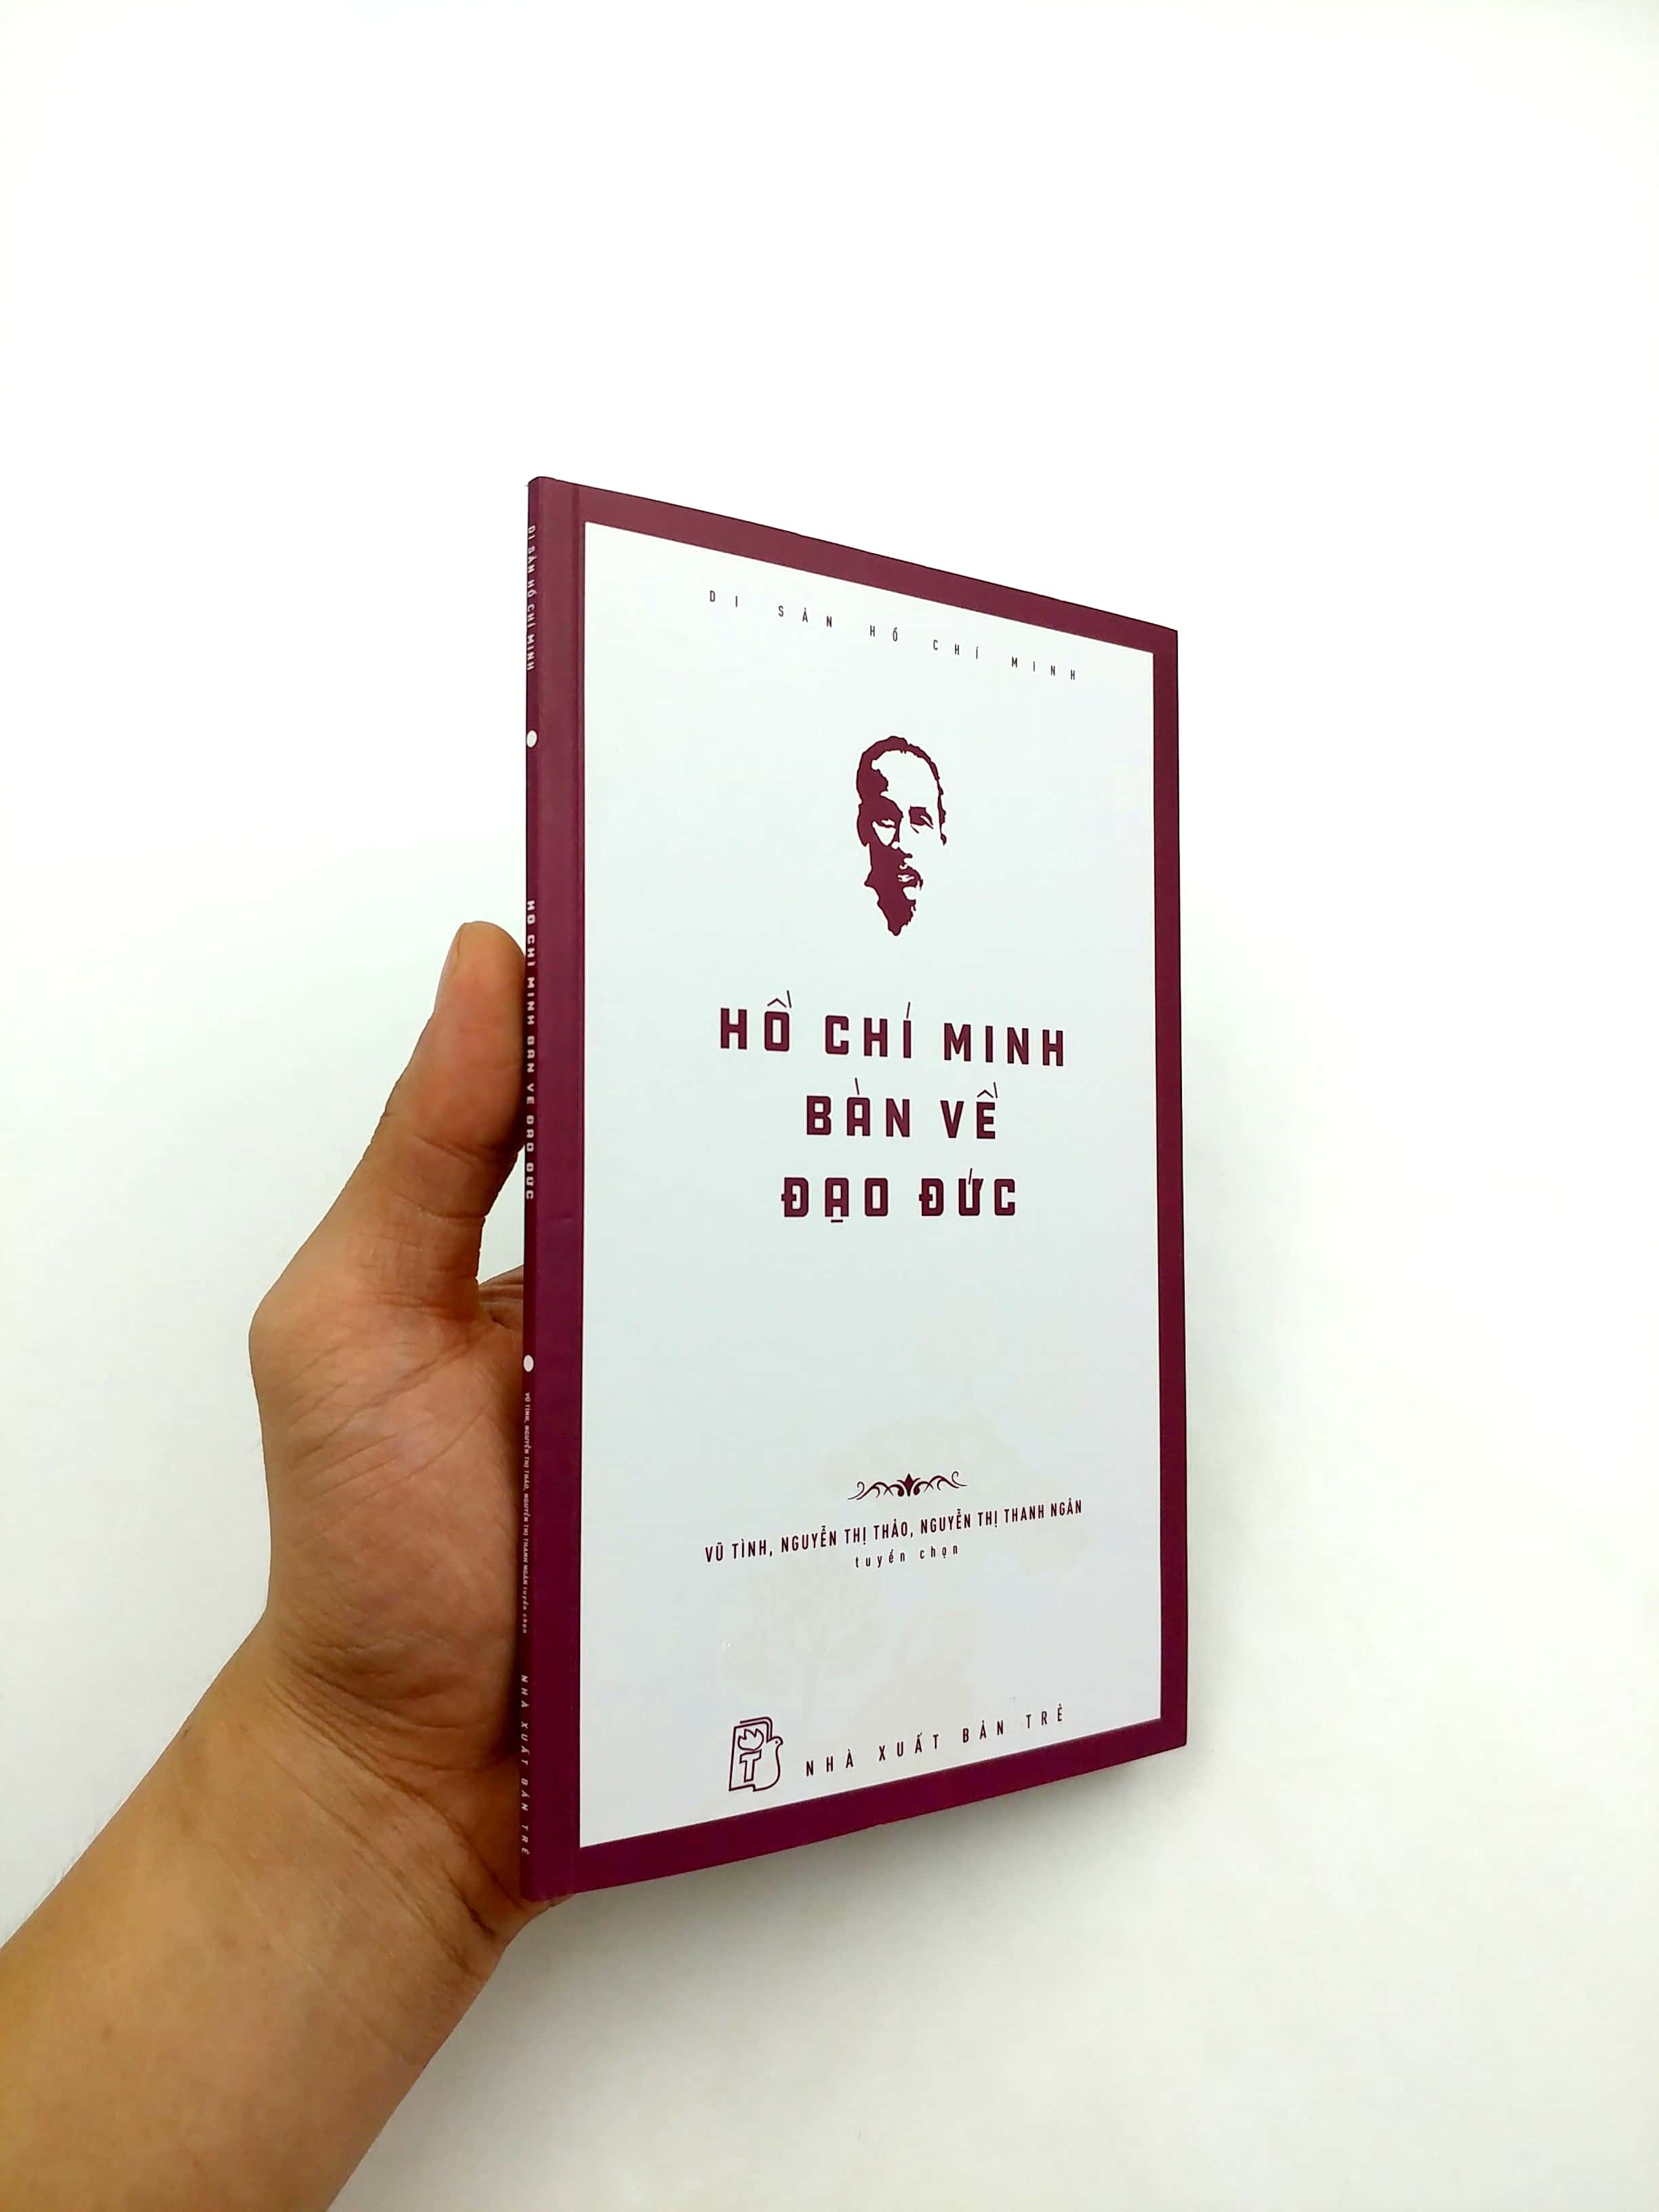 Di Sản Hồ Chí Minh - Hồ Chí Minh Bàn Về Đạo Đức PDF